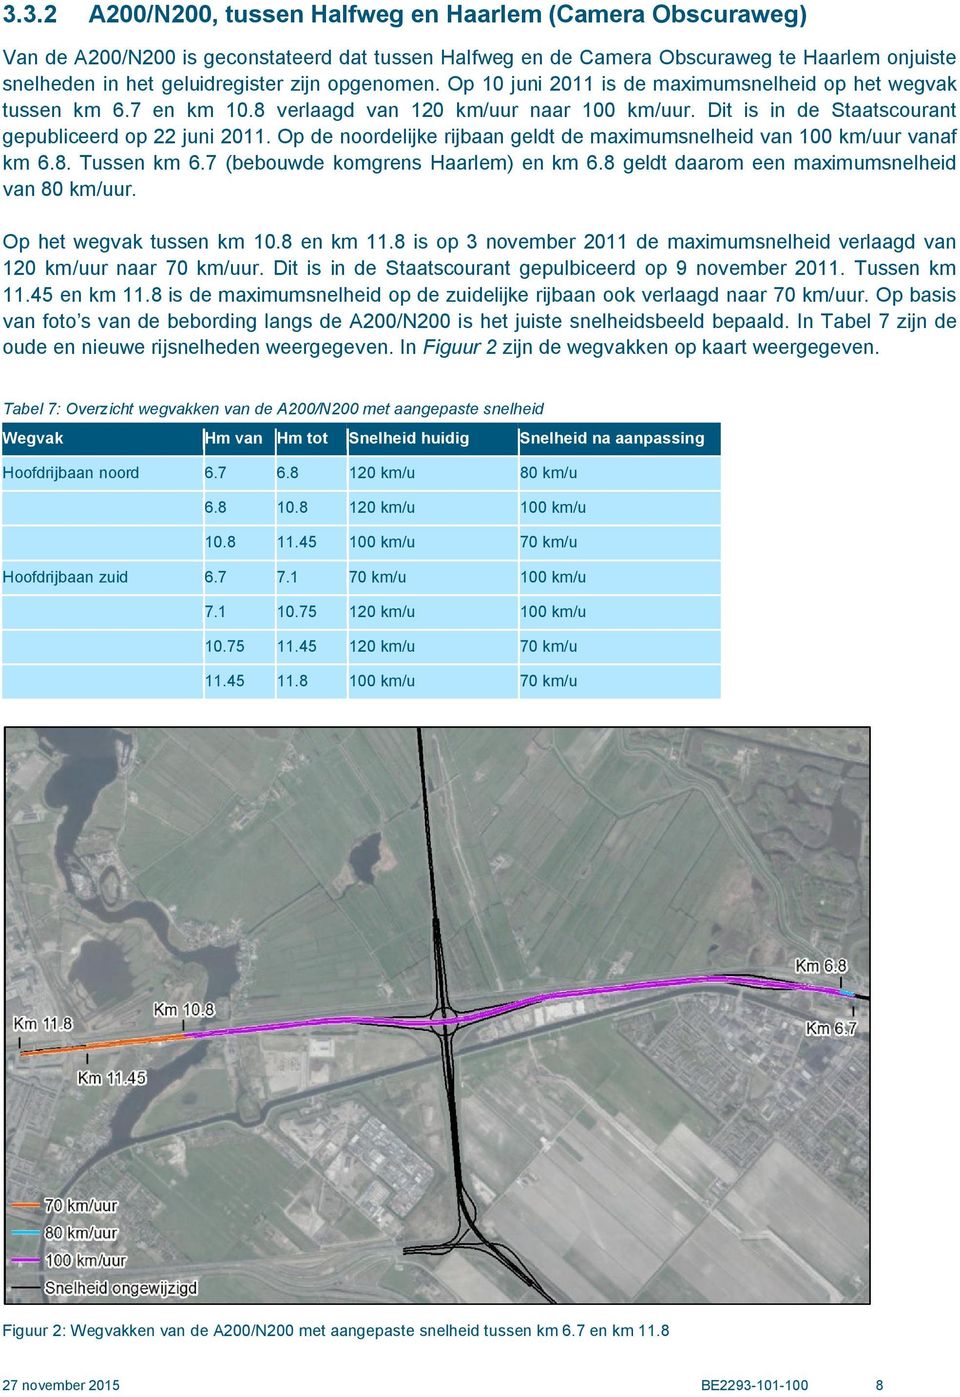 Op de noordelijke rijbaan geldt de maximumsnelheid van 100 km/uur vanaf km 6.8. Tussen km 6.7 (bebouwde komgrens Haarlem) en km 6.8 geldt daarom een maximumsnelheid van 80 km/uur.